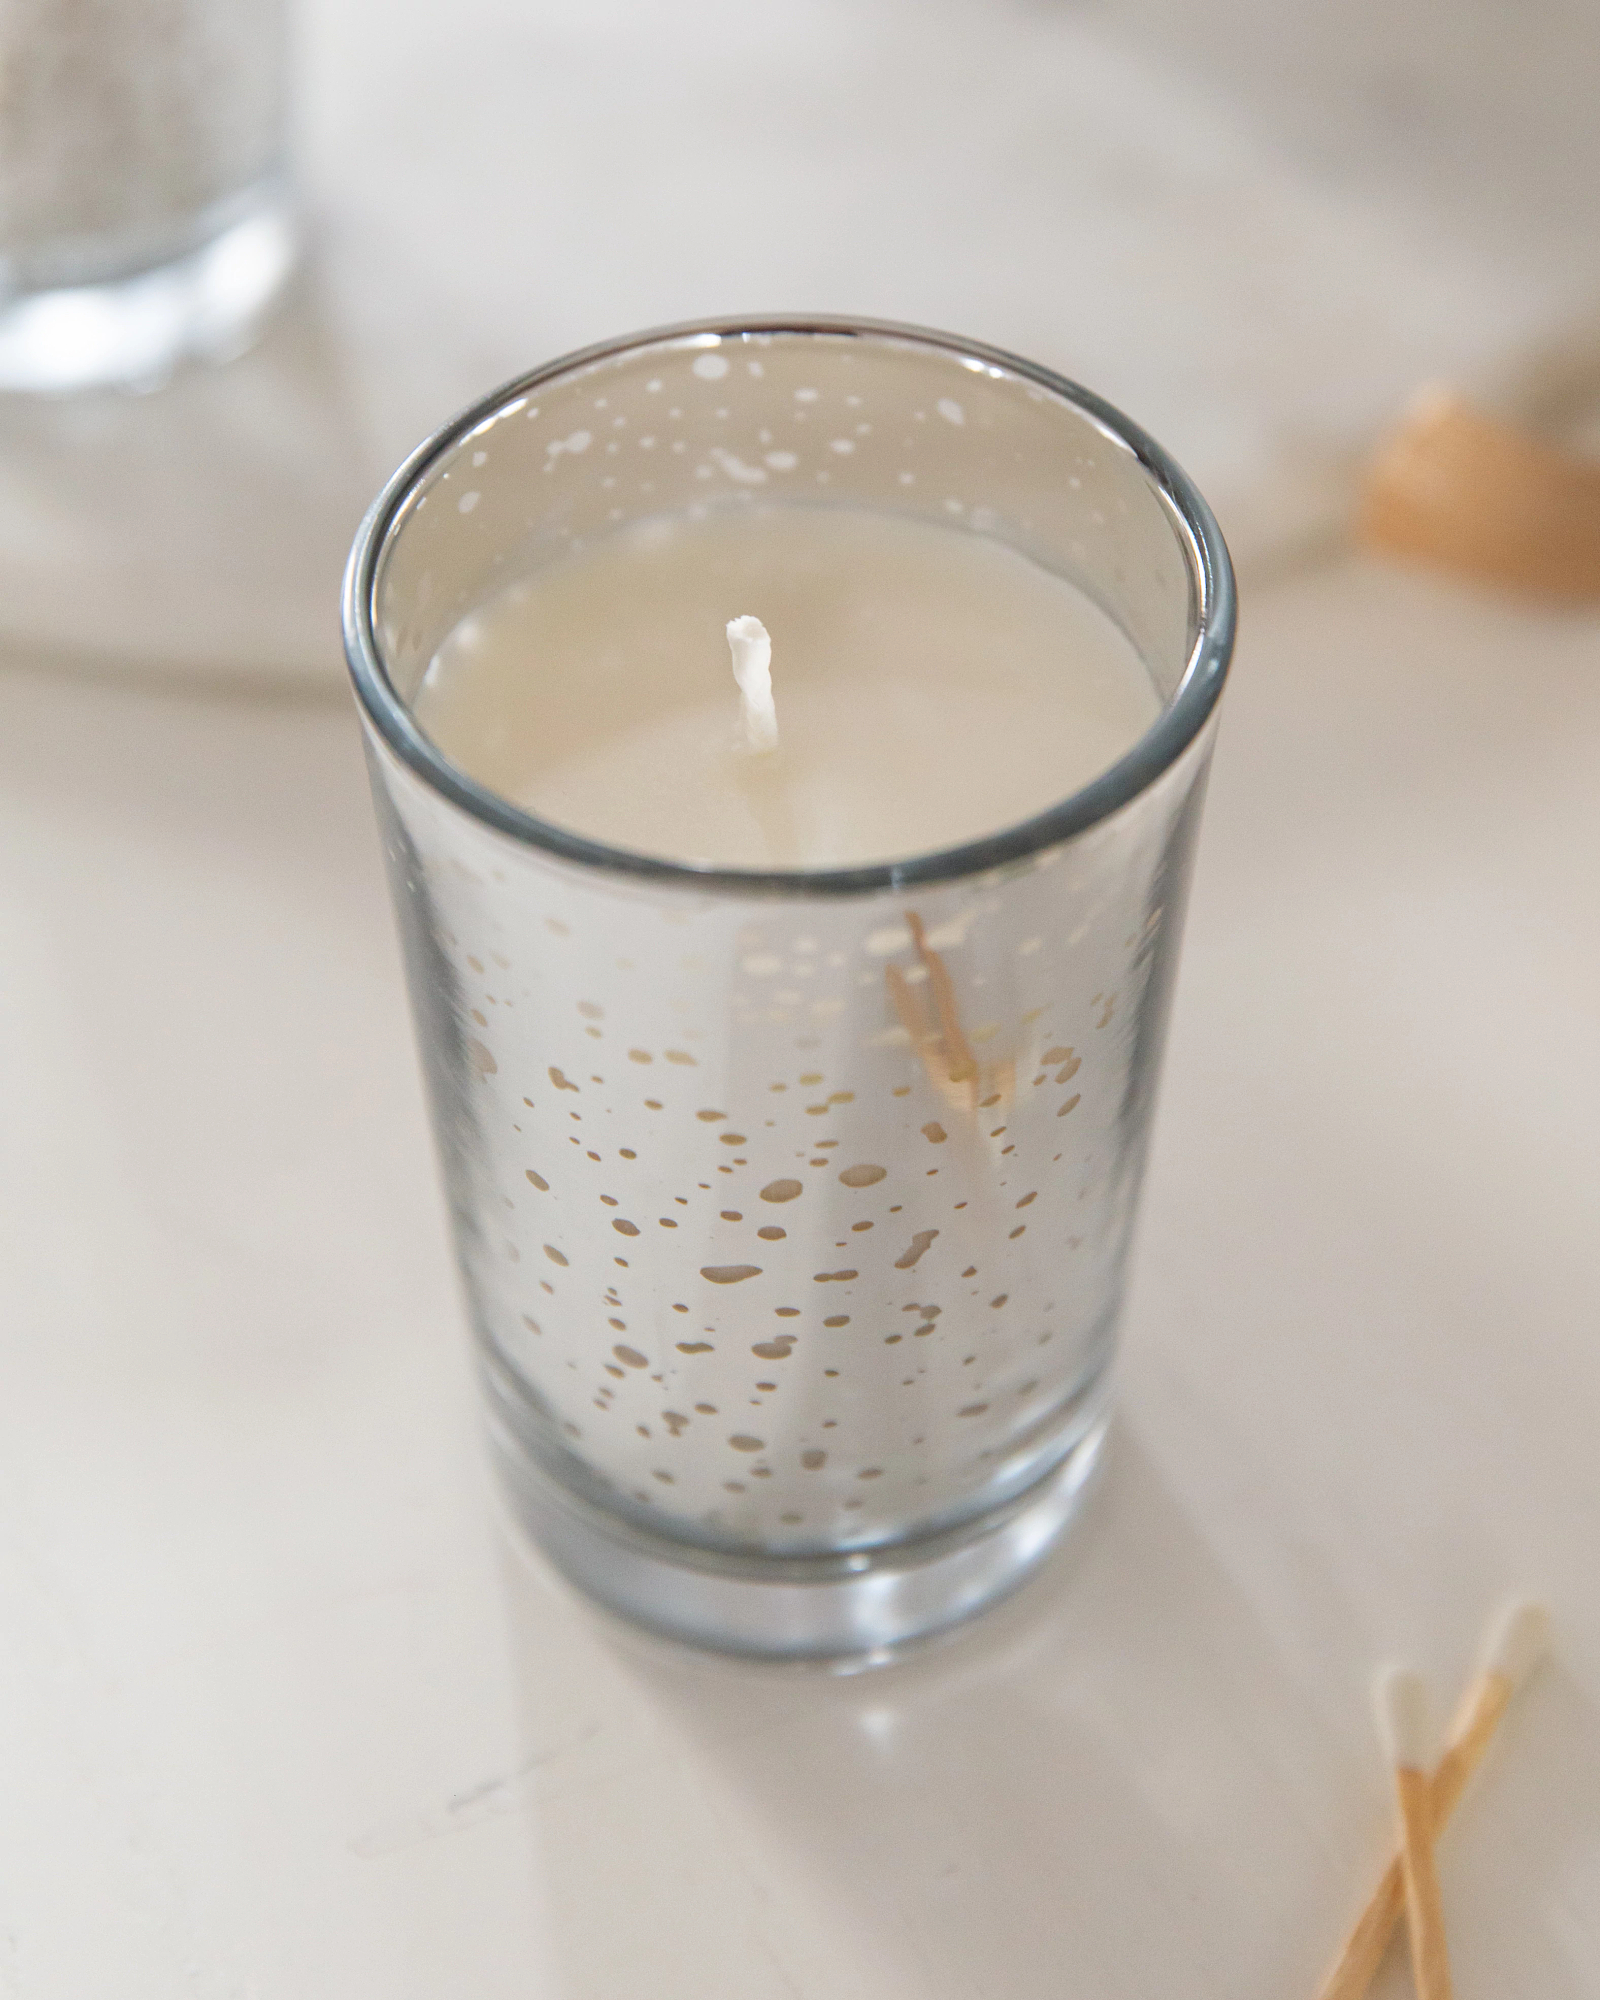 ILLUME® Mini Luxe Glass Trio Scented Candles